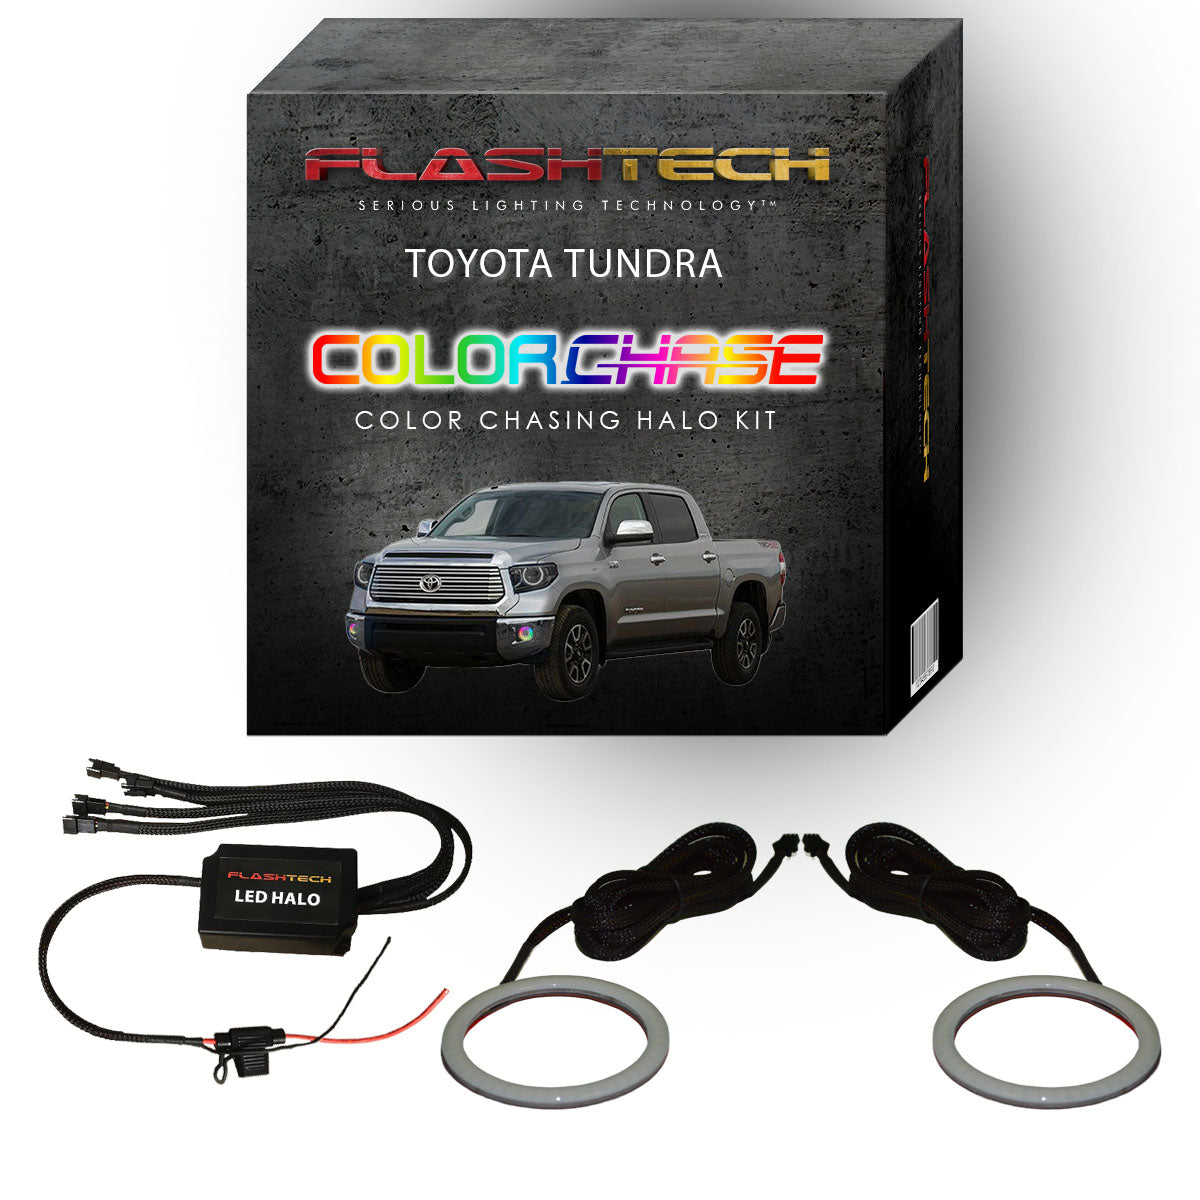 Toyota Tundra ColorChase LED Halo Fog Light Kit 2014-2015